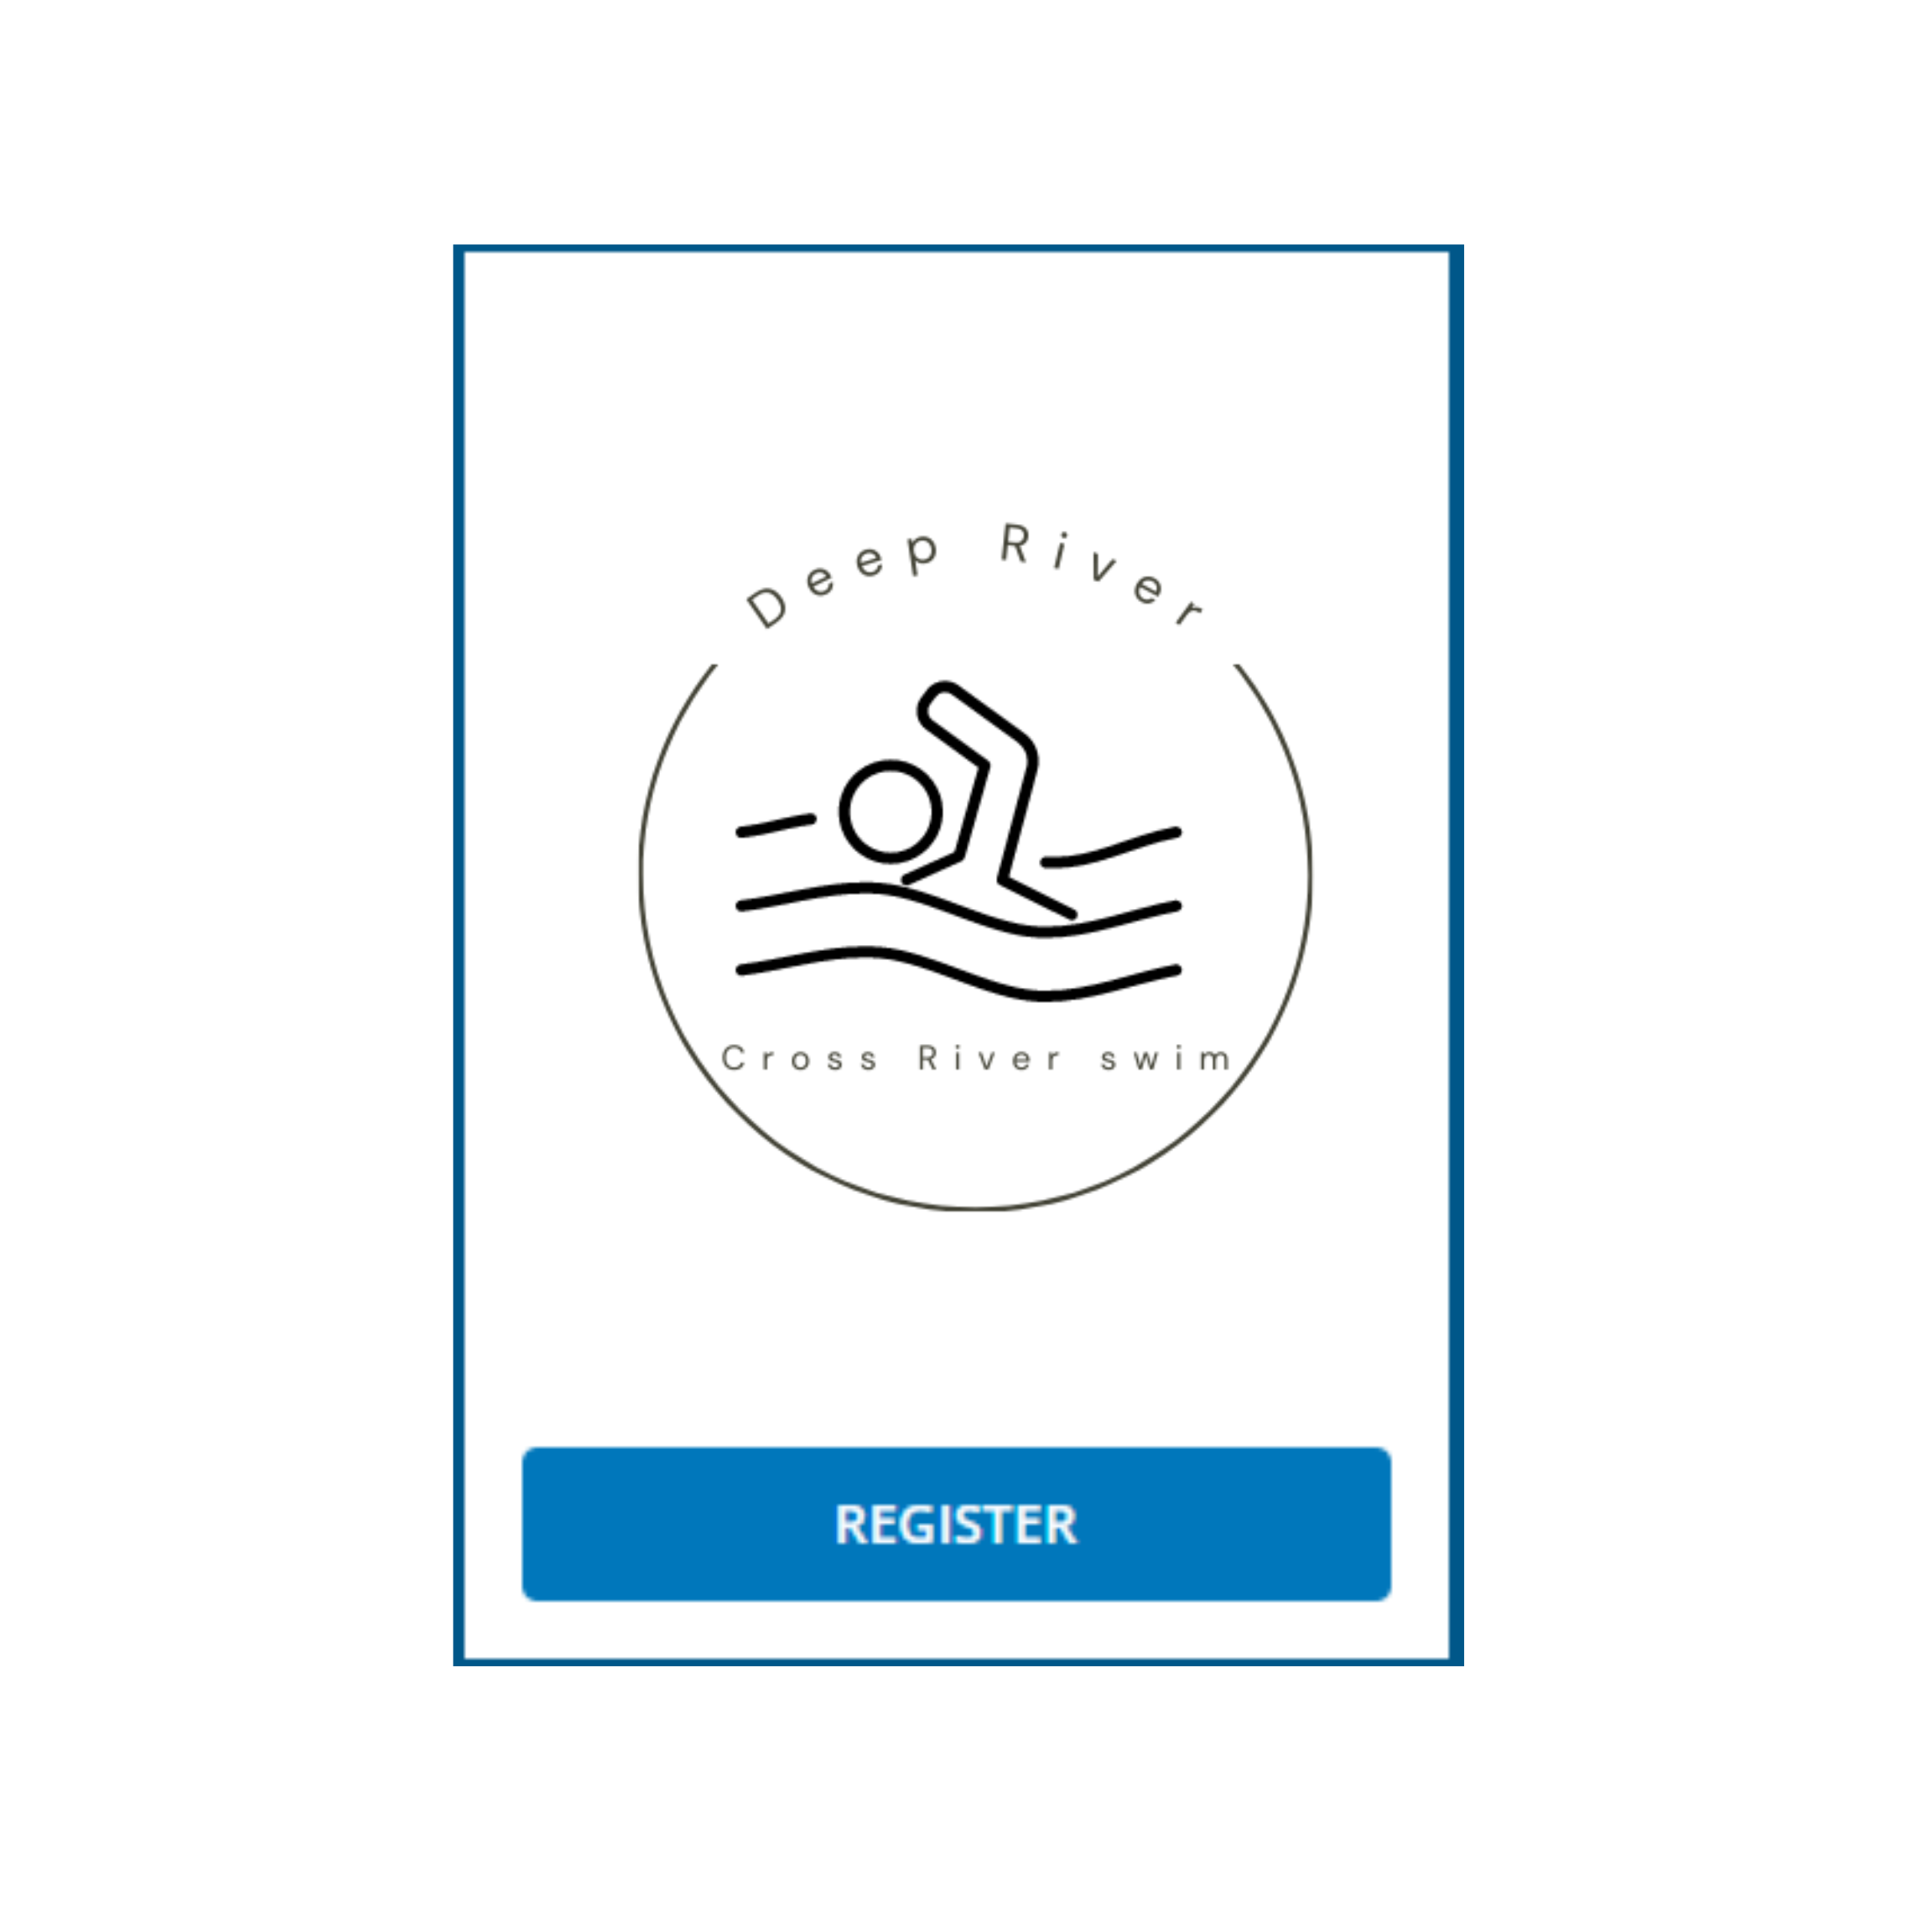 Cross River Swim register